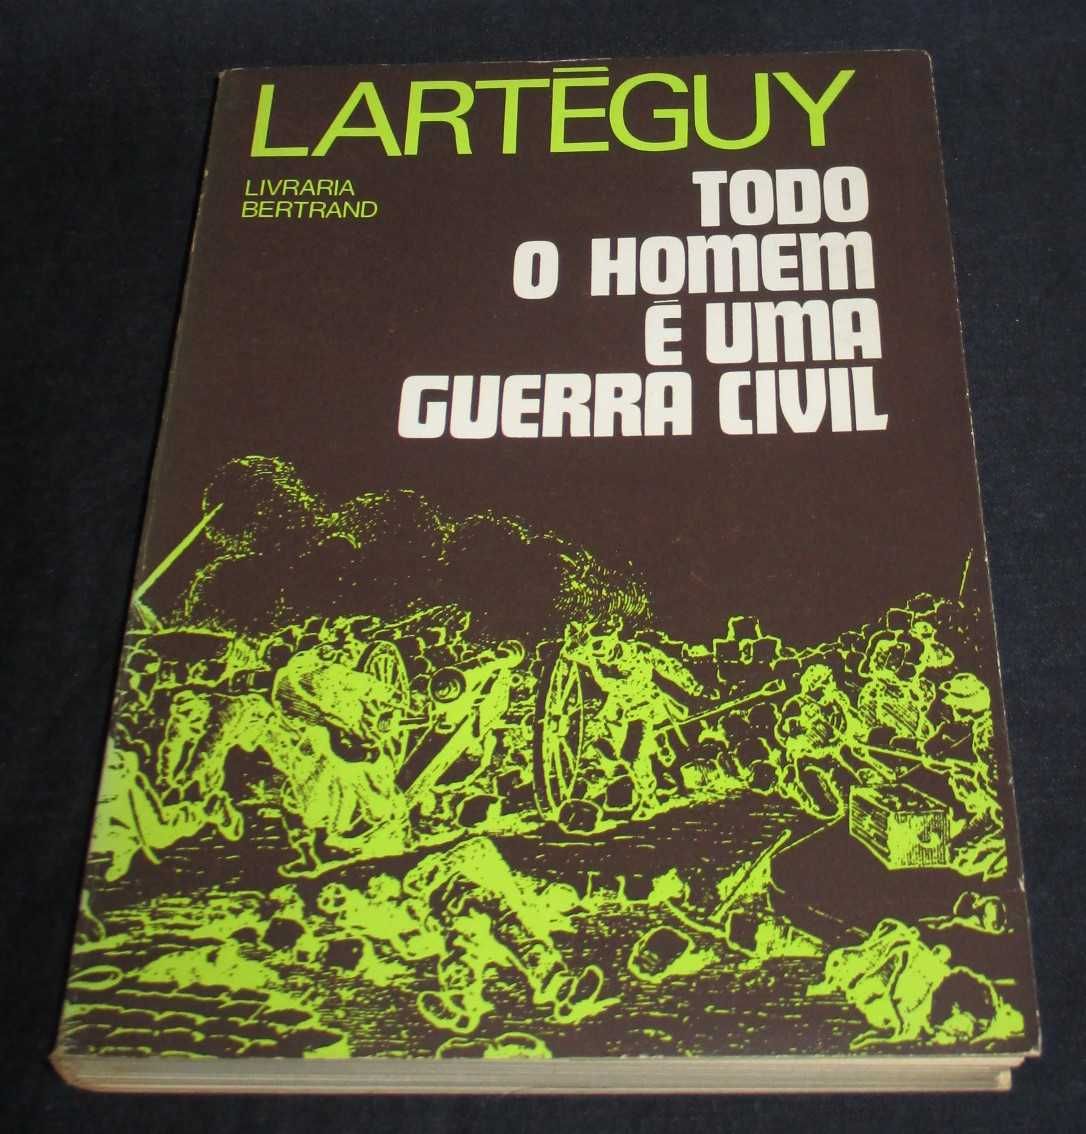 Livro Todo o Homem é uma Guerra Civil Jean Lartéguy